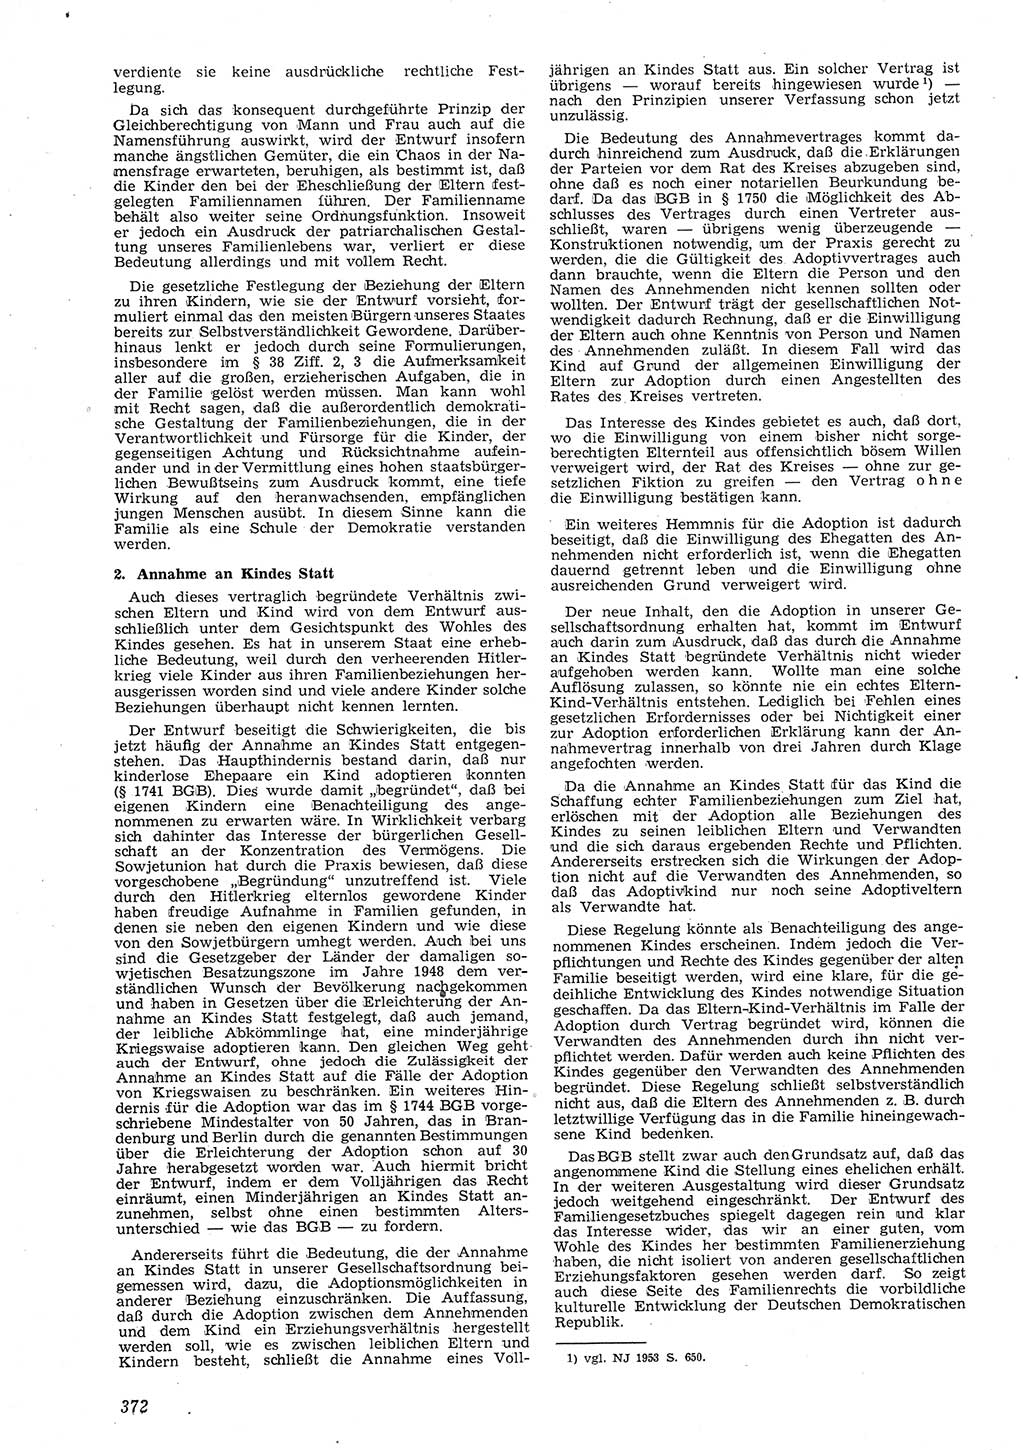 Neue Justiz (NJ), Zeitschrift für Recht und Rechtswissenschaft [Deutsche Demokratische Republik (DDR)], 8. Jahrgang 1954, Seite 372 (NJ DDR 1954, S. 372)